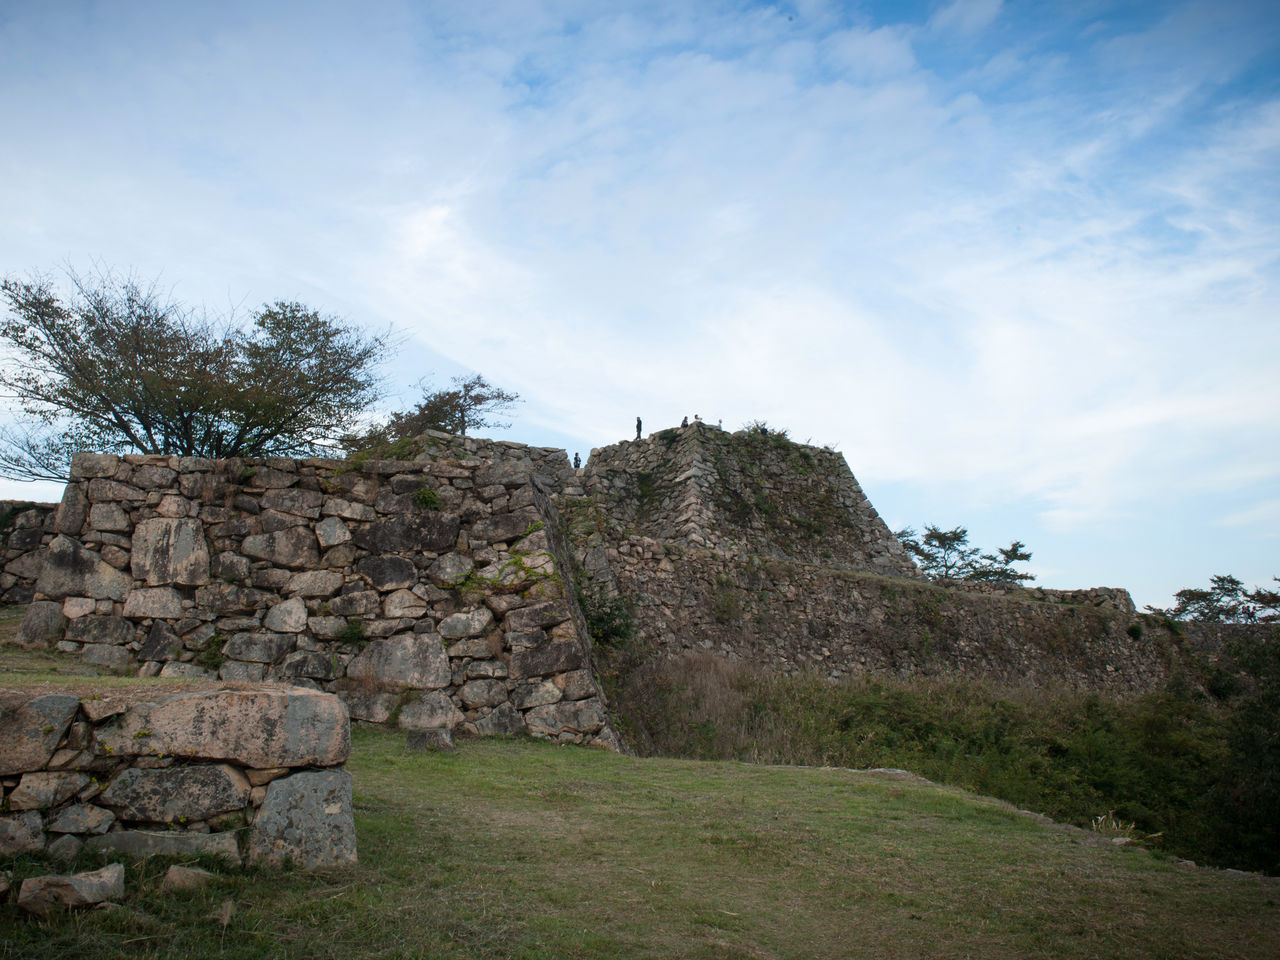 Los muros construidos con piedras naturales apiladas y que apenas fueron talladas son magníficos.